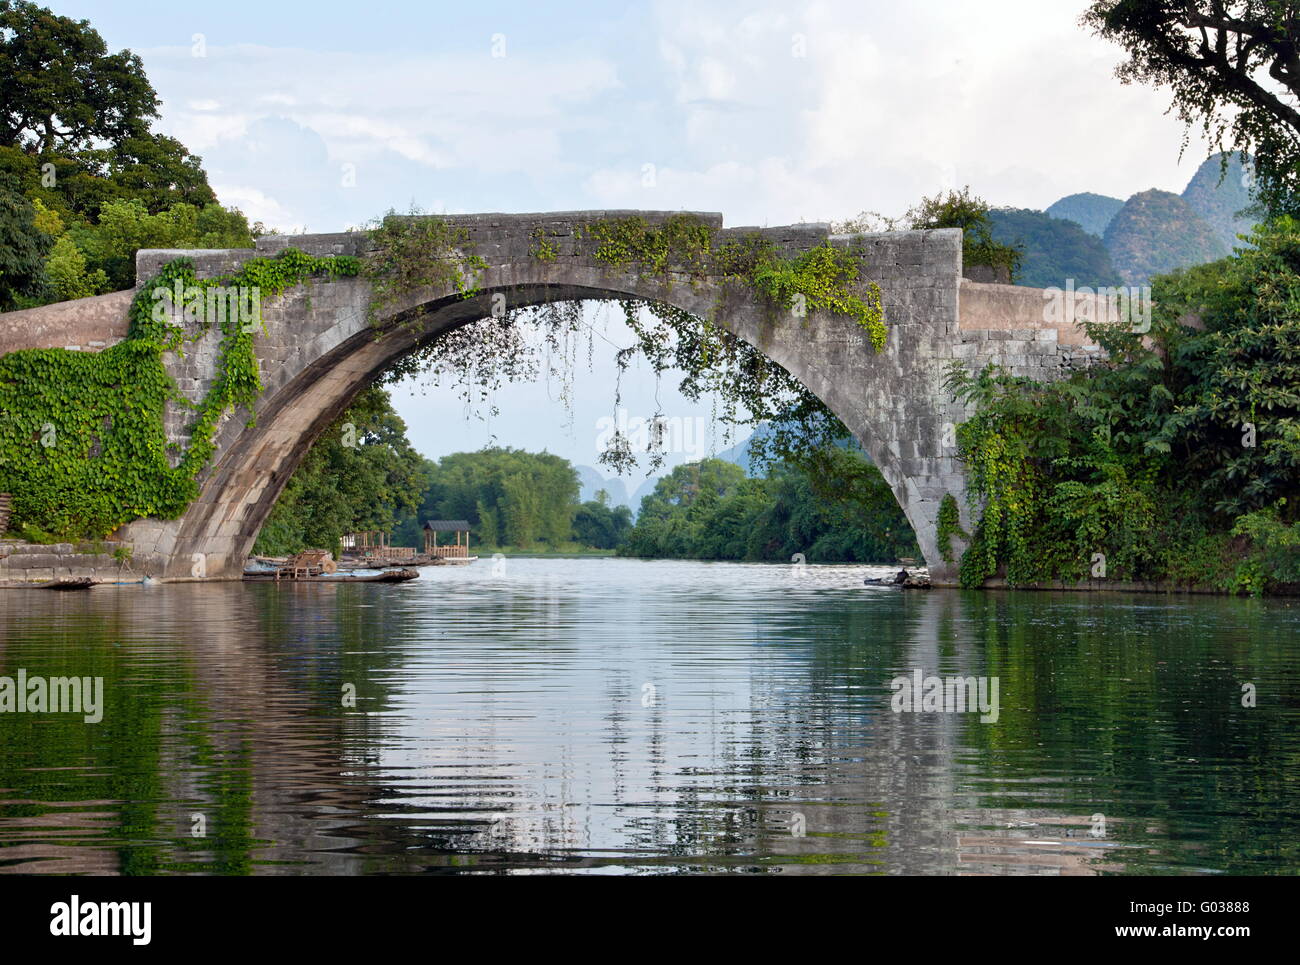 Pont de pierre sur le paysage chinois li river bridge avec réflexion sur l'eau Banque D'Images